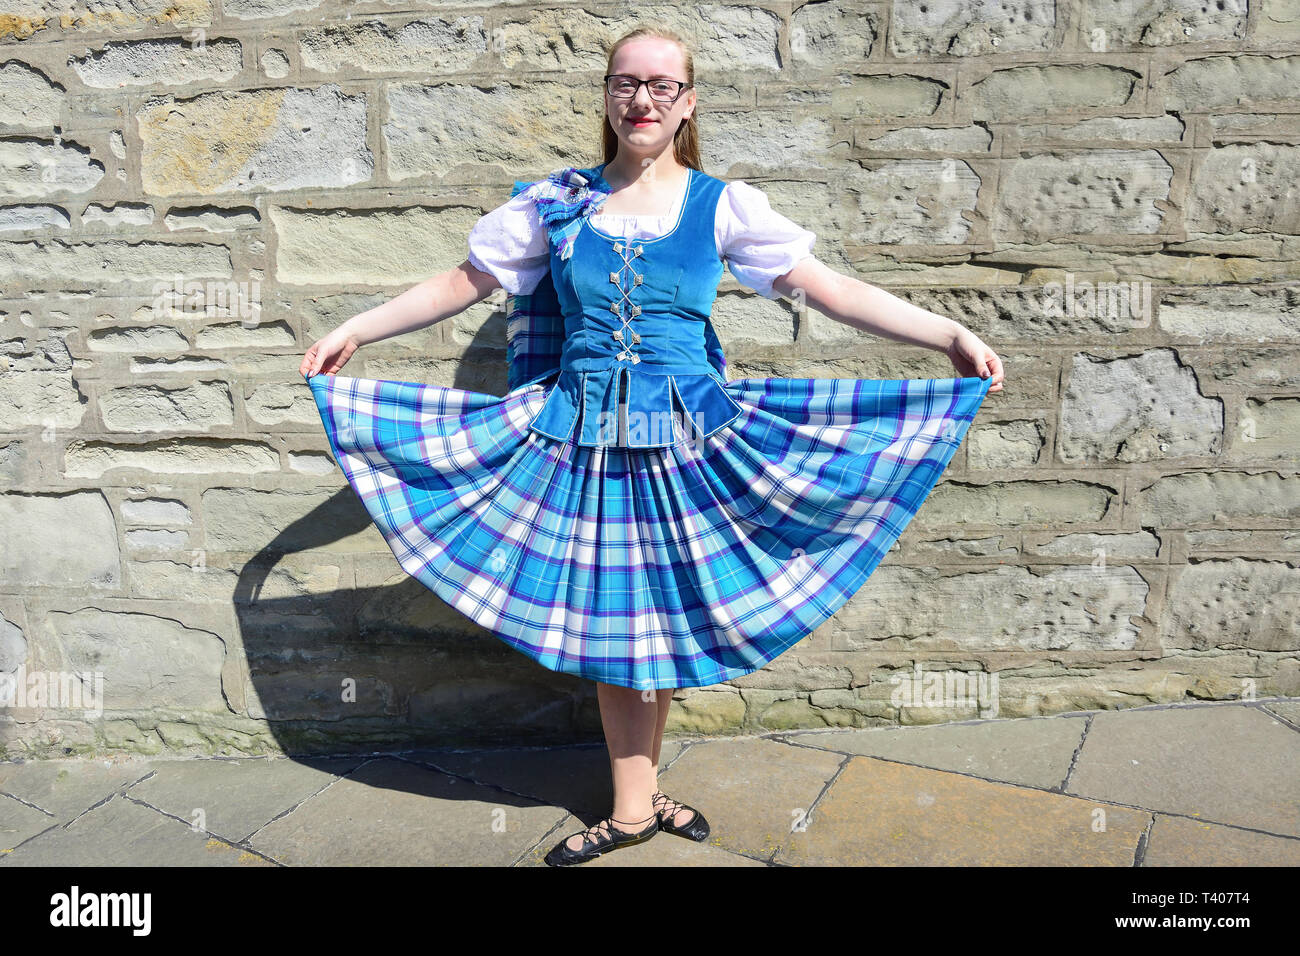 Hembra joven bailarín escocés, Mercado Cruz, Lerwick, Shetland, las Islas del Norte, Scotland, Reino Unido Foto de stock